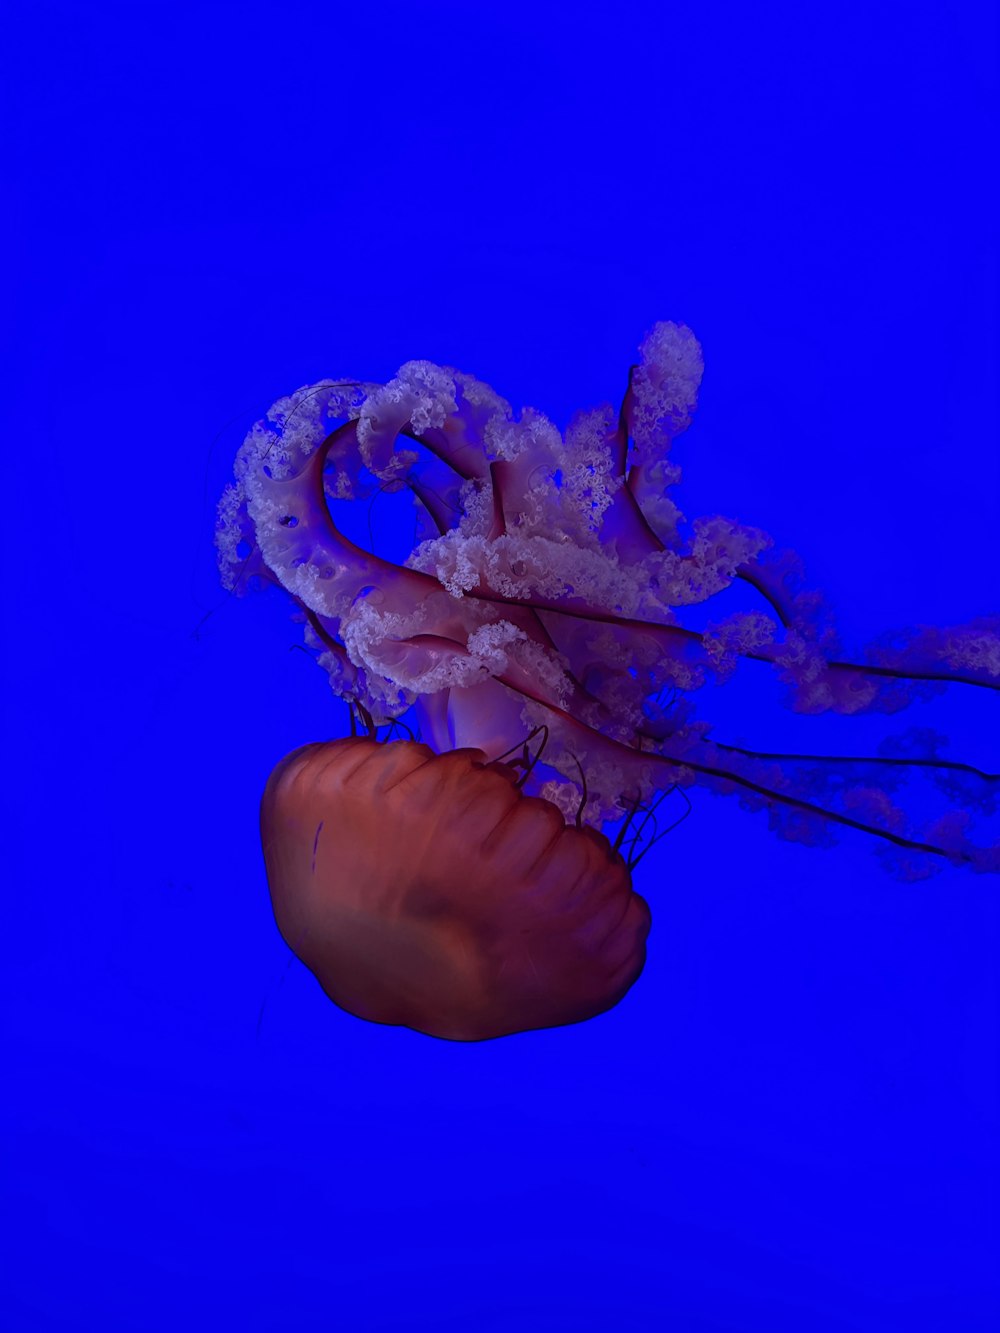 una medusa naranja y blanca flotando en el agua